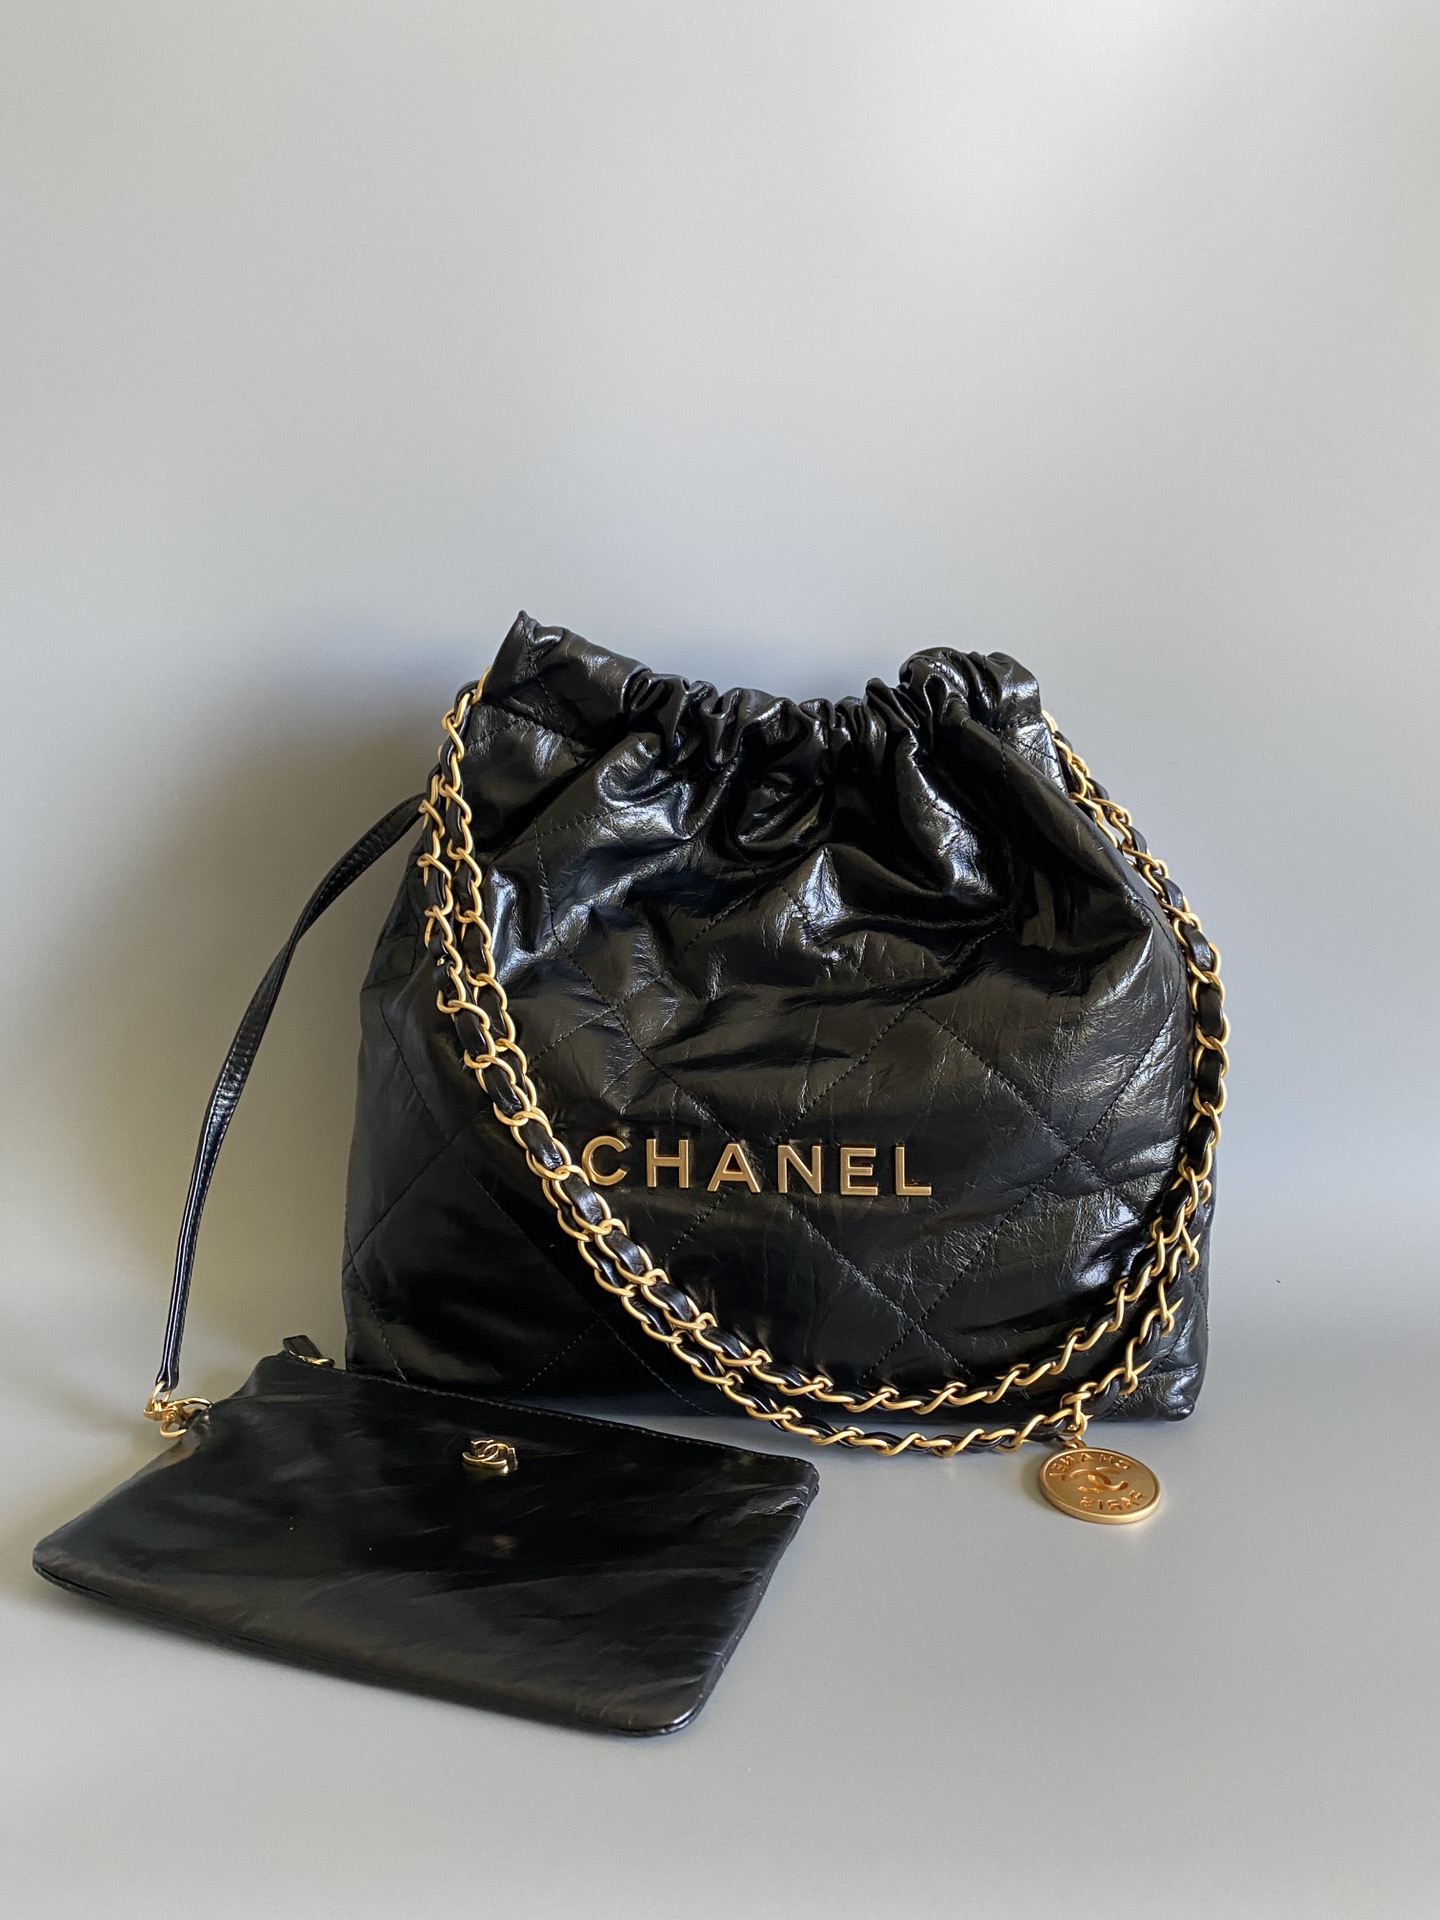 FashionReps | The Best Quality Replica Fashion Handbags Accessories Online Chanel 22 Bag Replica